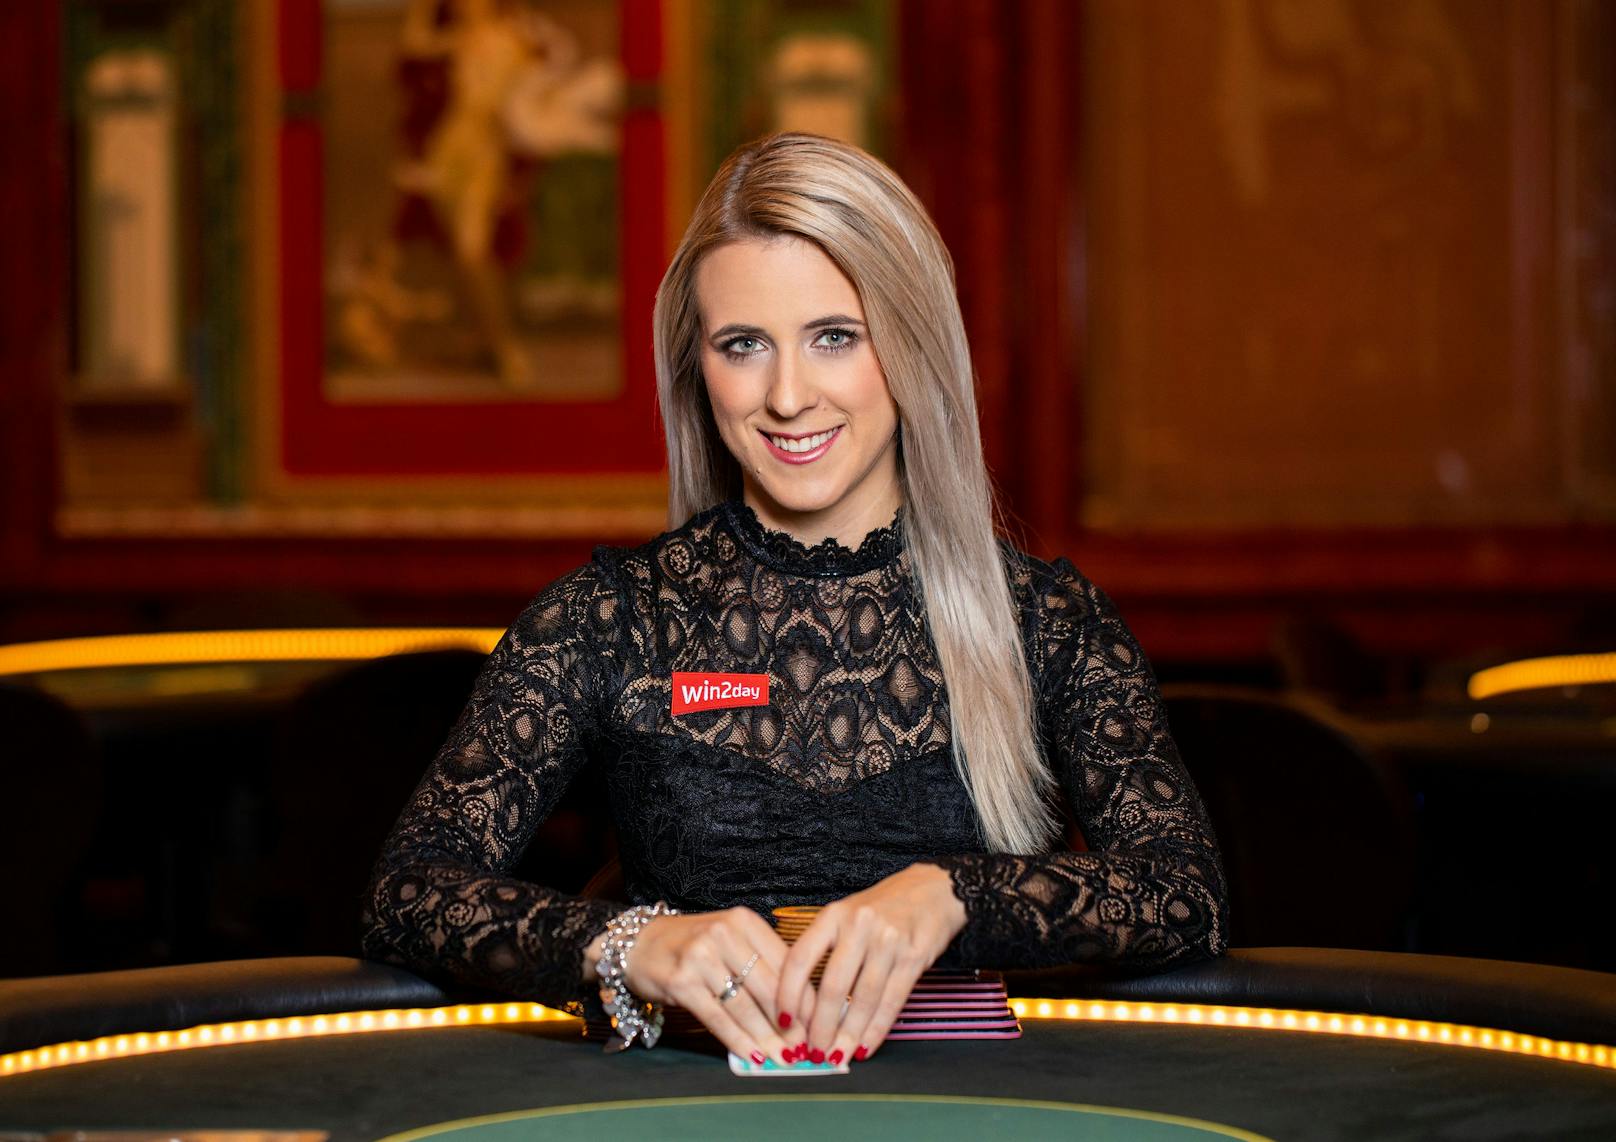 Poker-Weltmeisterin Jessica Teusl wartet schon mit Spannung auf das Online-PokerTurnier: <em>"Gratis-Turniere machen immer Spaß, vor allem dann, wenn im Preispool unglaubliche € 10.000 sind."</em>